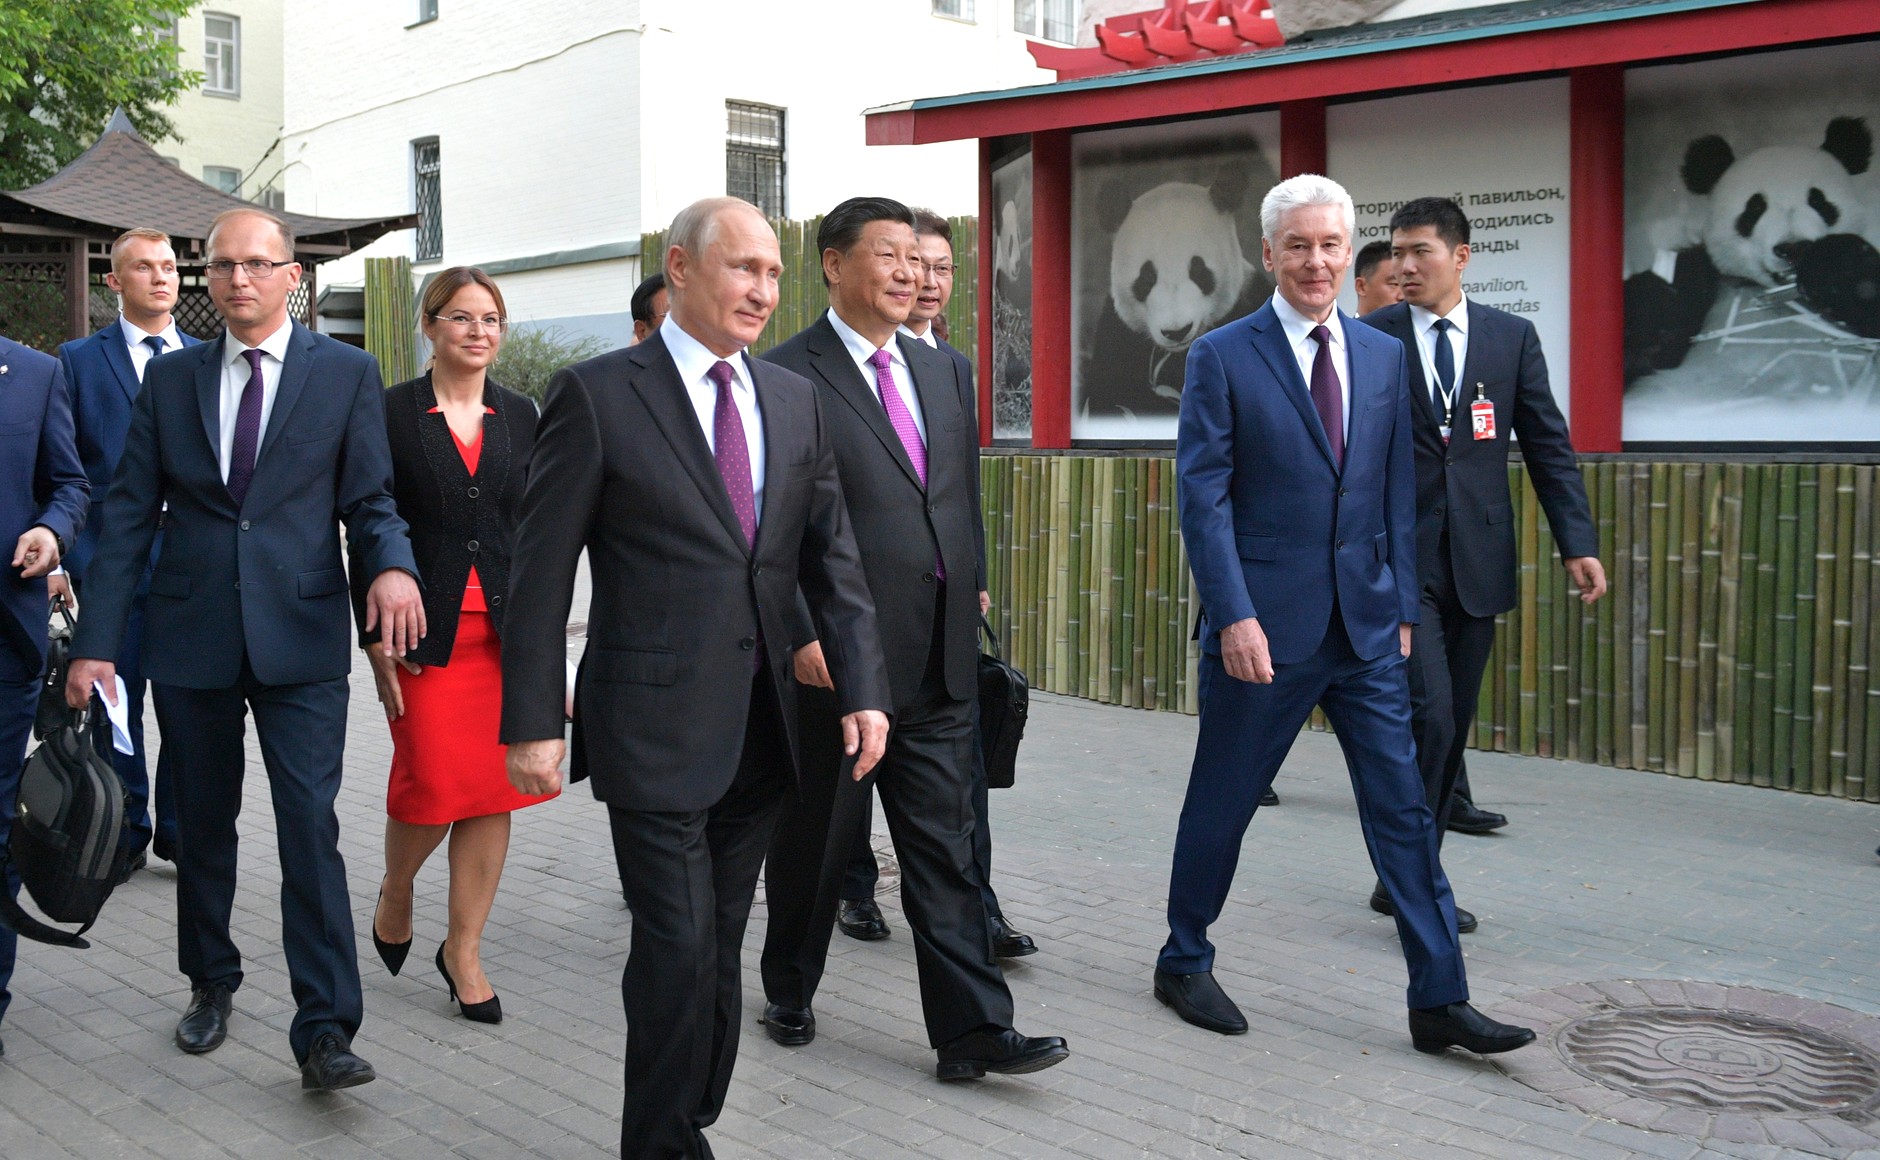 По окончании российско-китайских переговоров Владимир Путин и Председатель Китайской Народной Республики Си Цзиньпин посетили Московский зоопарк, где осмотрели павильон больших панд.